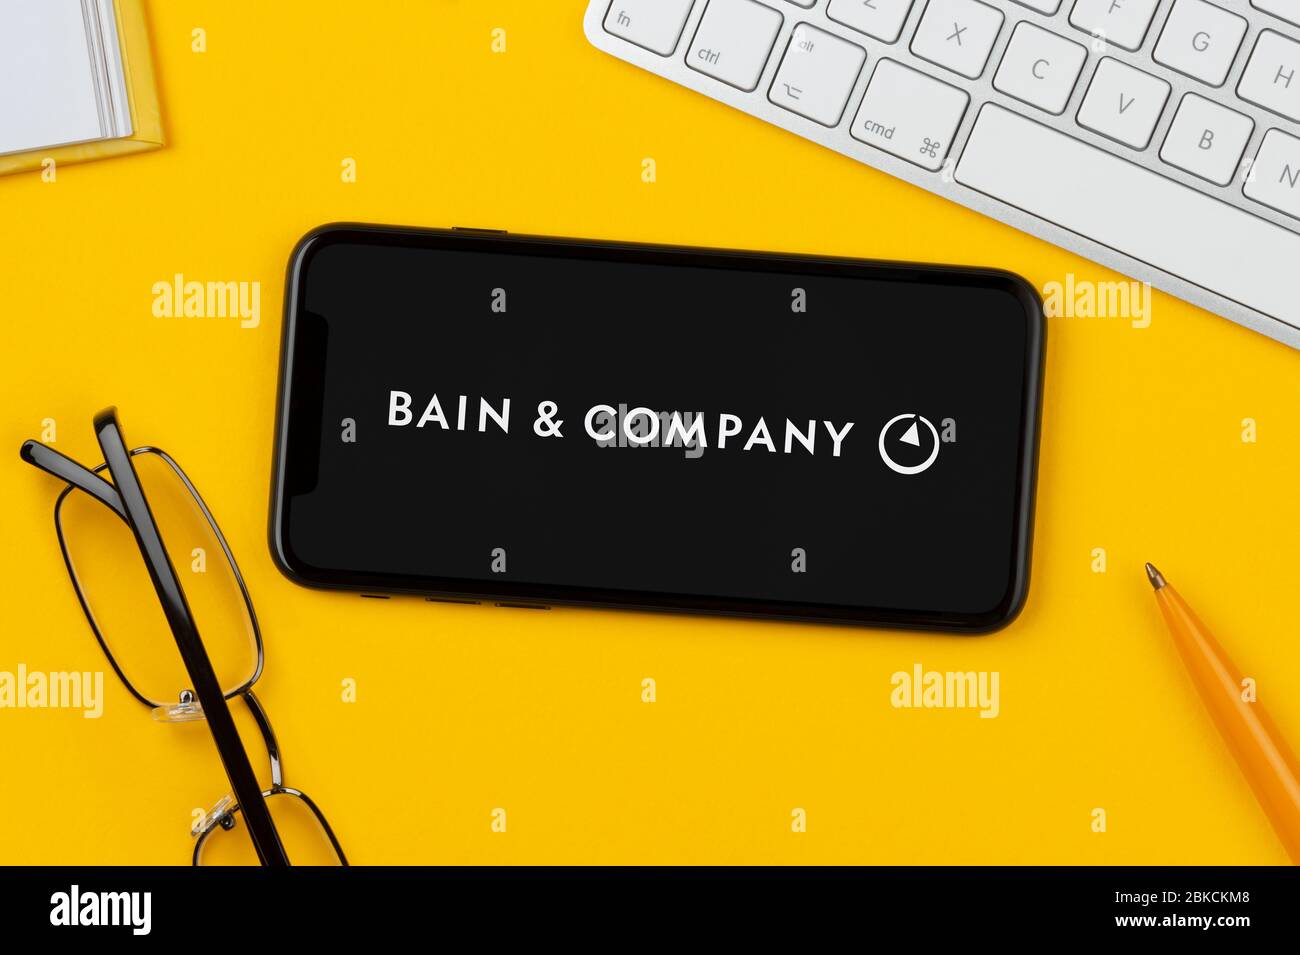 Un smartphone affichant le logo bains & Company repose sur un fond jaune avec un clavier, des lunettes, un stylo et un livre (usage éditorial uniquement). Banque D'Images